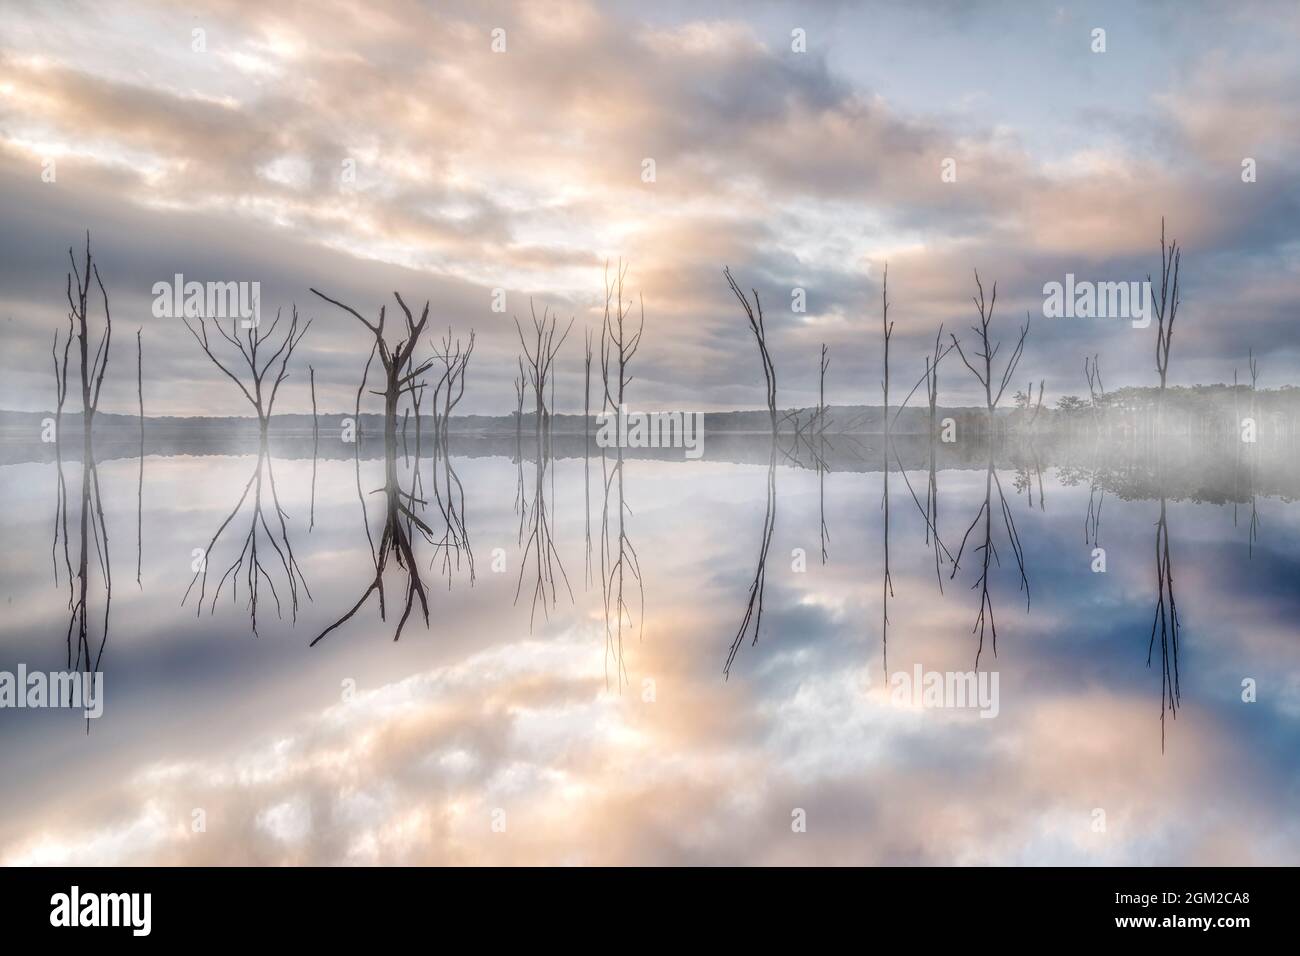 Un Alba di Foggy - alberi emergono a Dawn - rami di albero morto cominciano ad emergere attraverso la nebbia proprio prima che il sole nascente inizi a bruciare la mattina presto Foto Stock